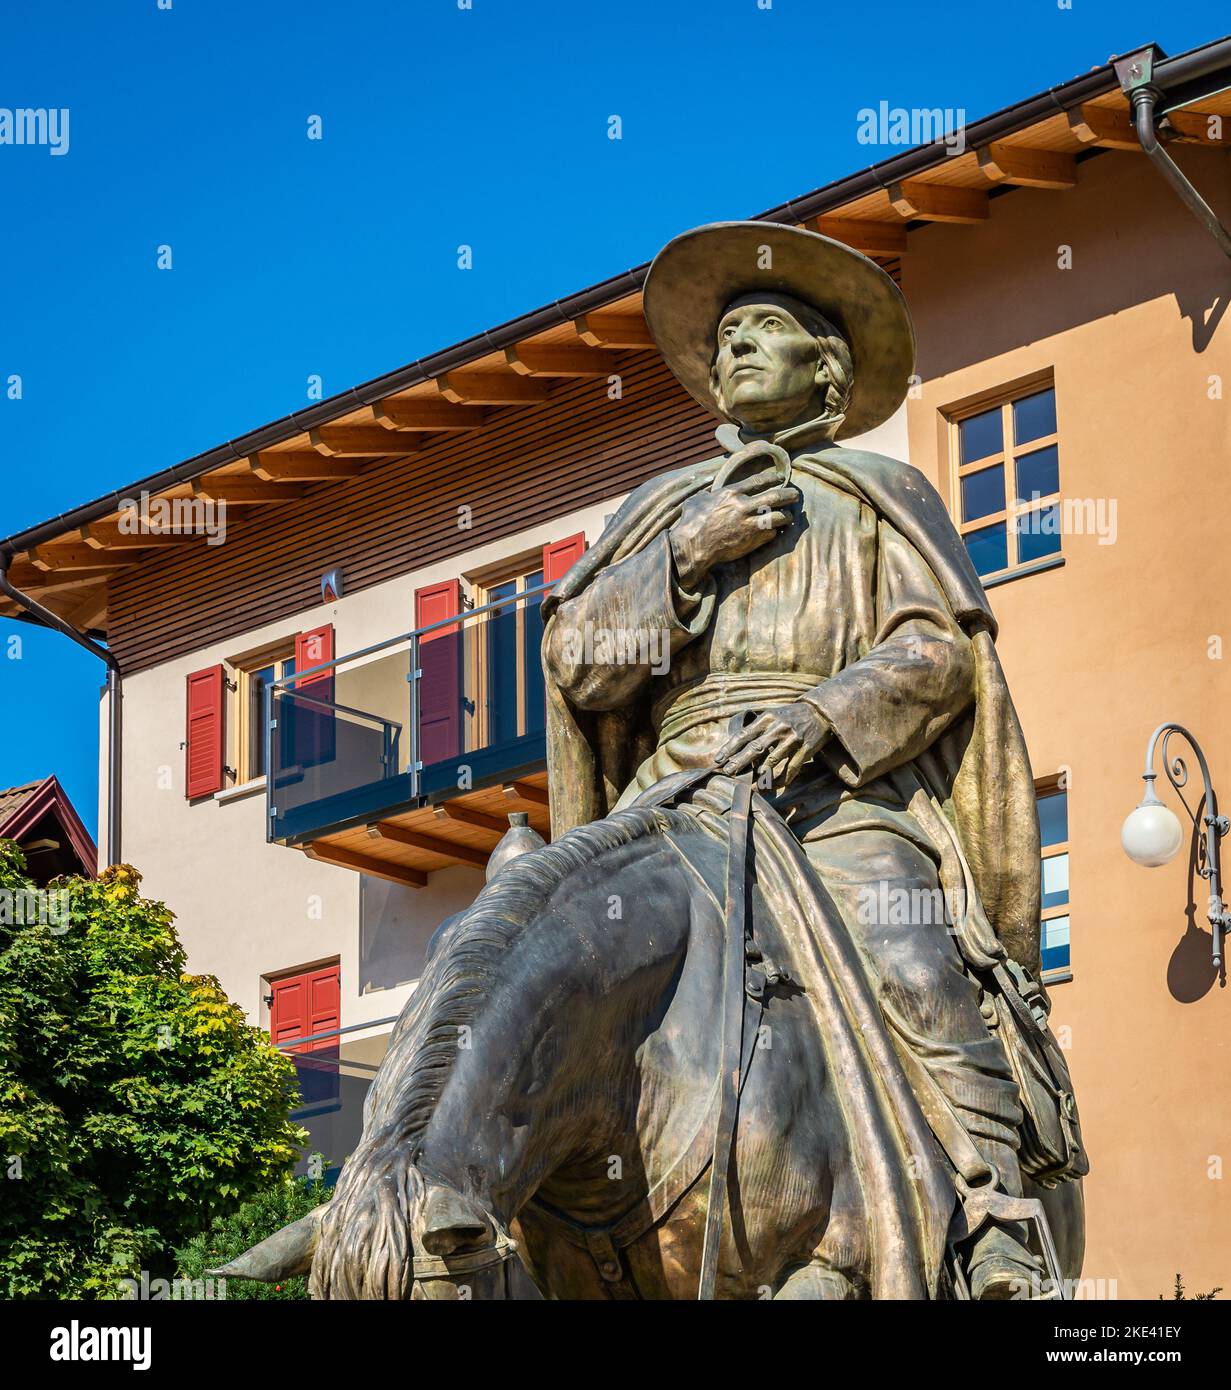 equestrian bronze statue of Eusebio Chini (Phater Kino) - 1645-1711. Segno,Predaia, Val di Non, Trento province,Trentino Alto Adige - Italy - septembe Stock Photo